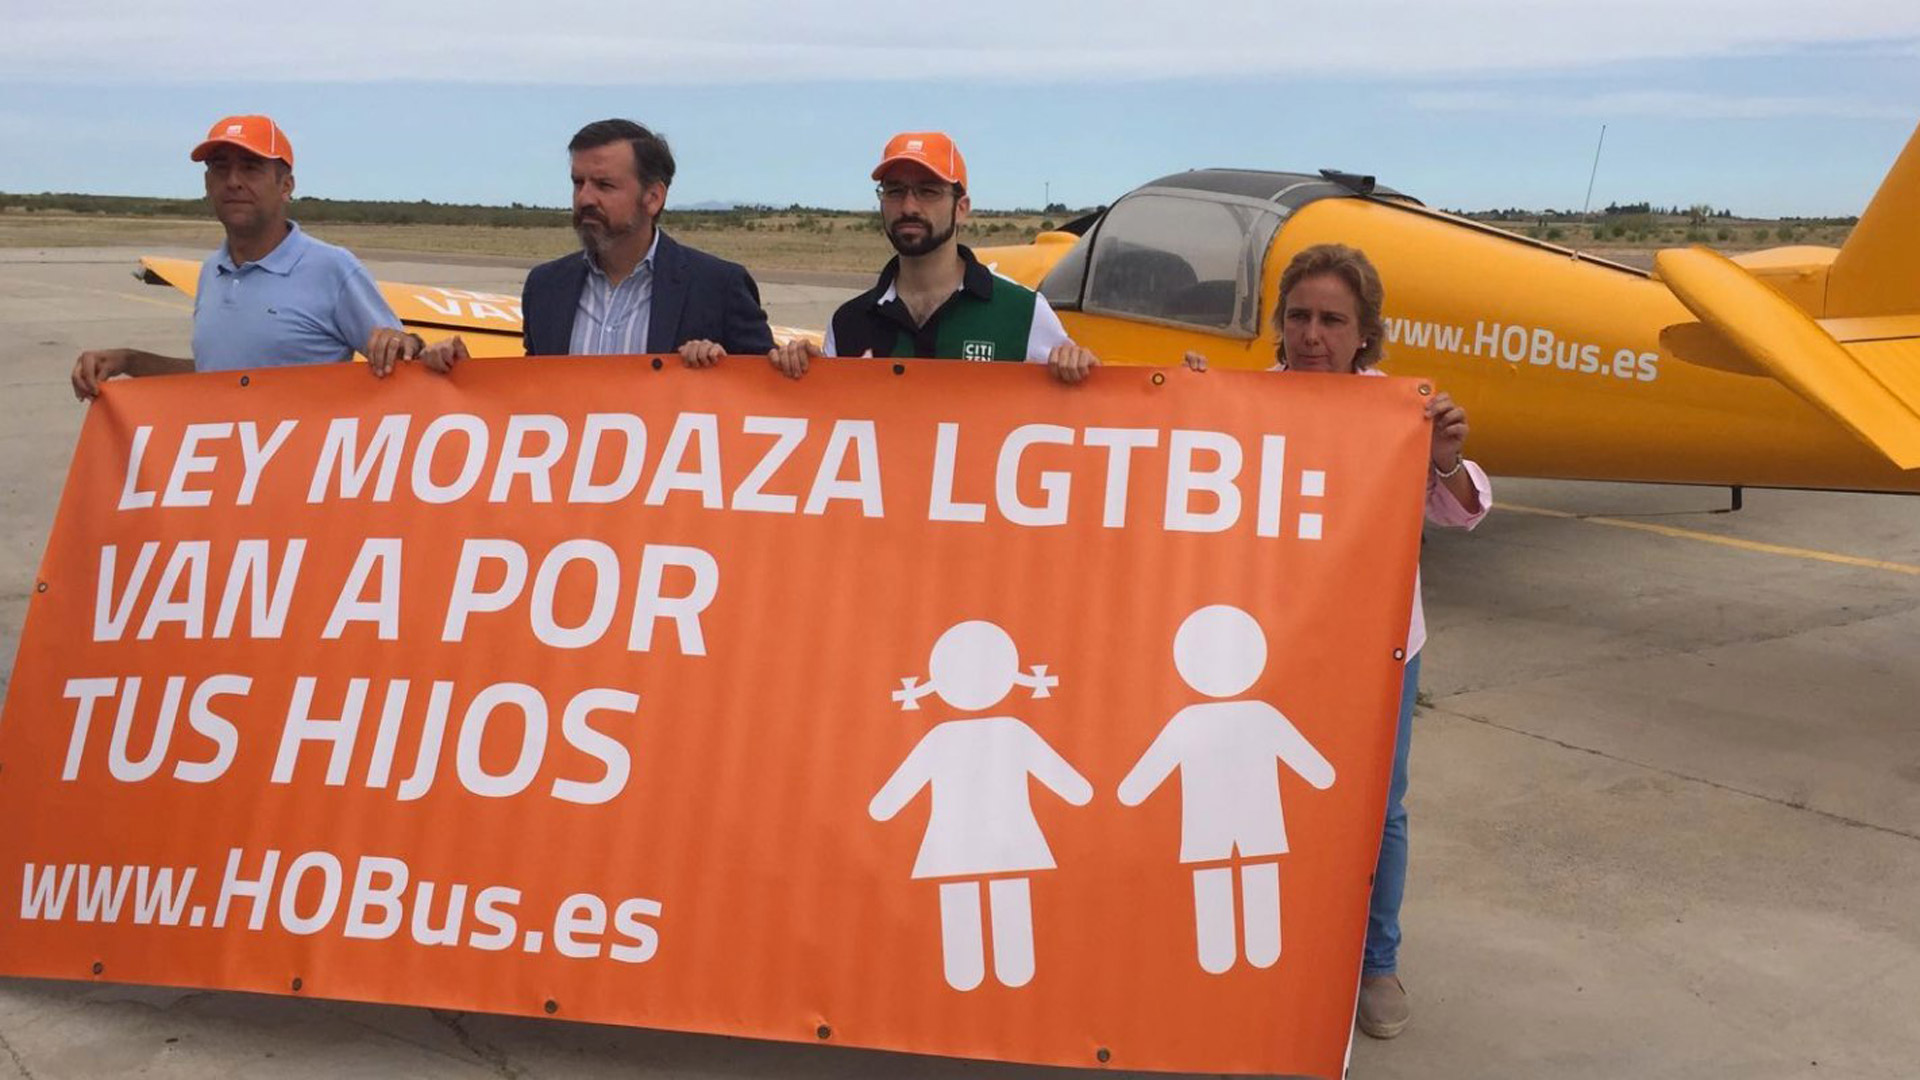 Hazte Oír presenta una avioneta con el mensaje "Van a por tus hijos"